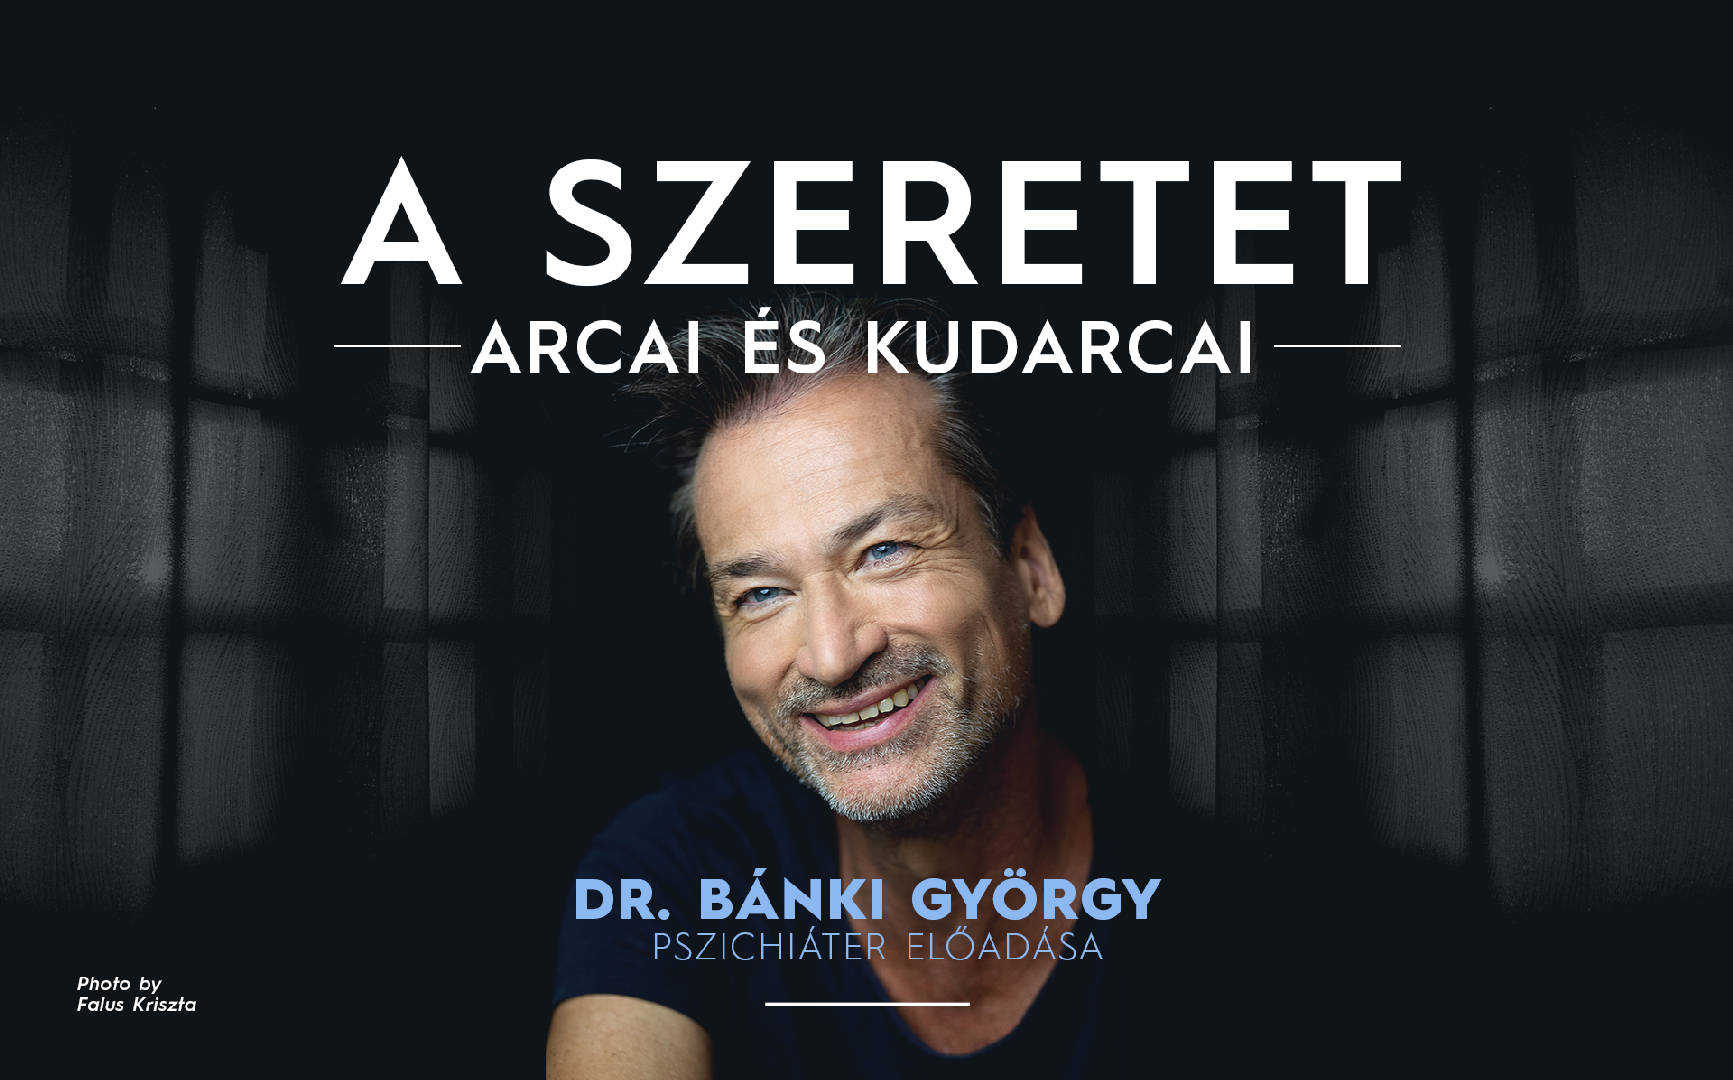 A szeretet arcai és kudarcai - BAJA - Dr. Bánki György pszichiáter előadása